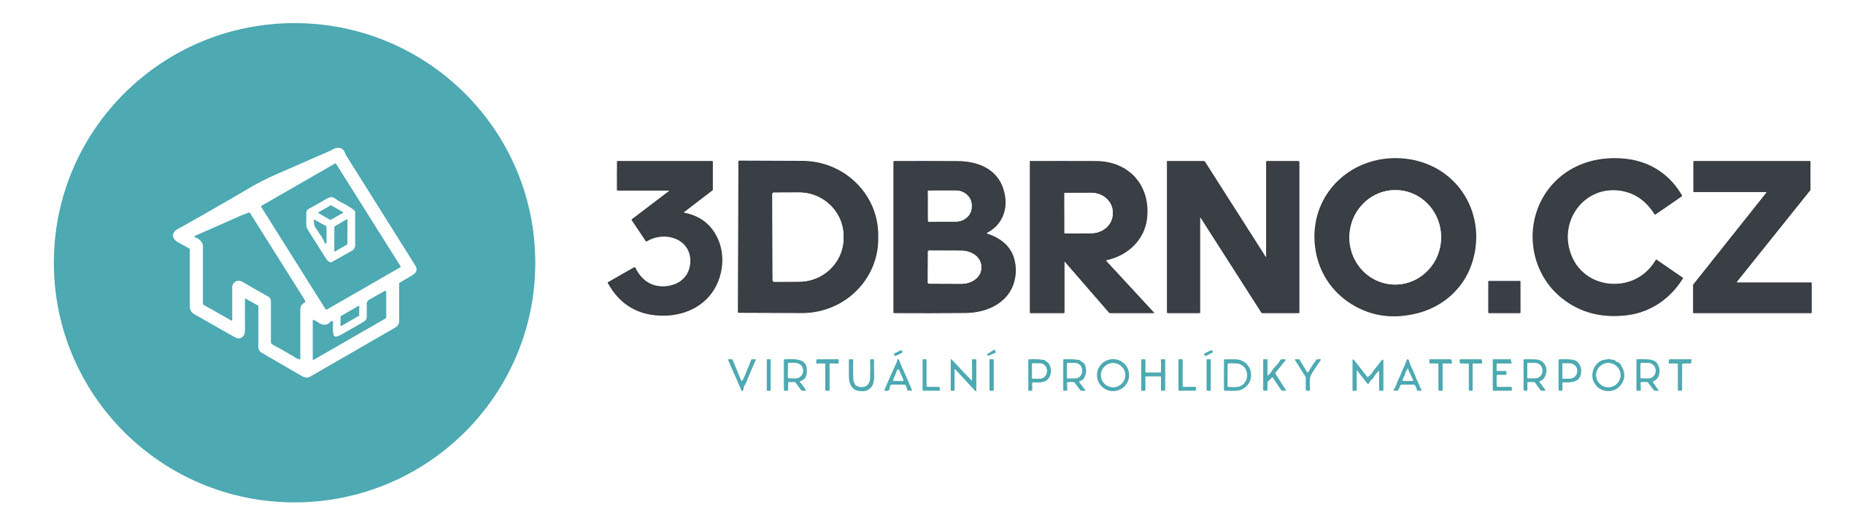 Matterport Brno - 3D Virtuální Prohlídky - 3D Sken nemovitostí